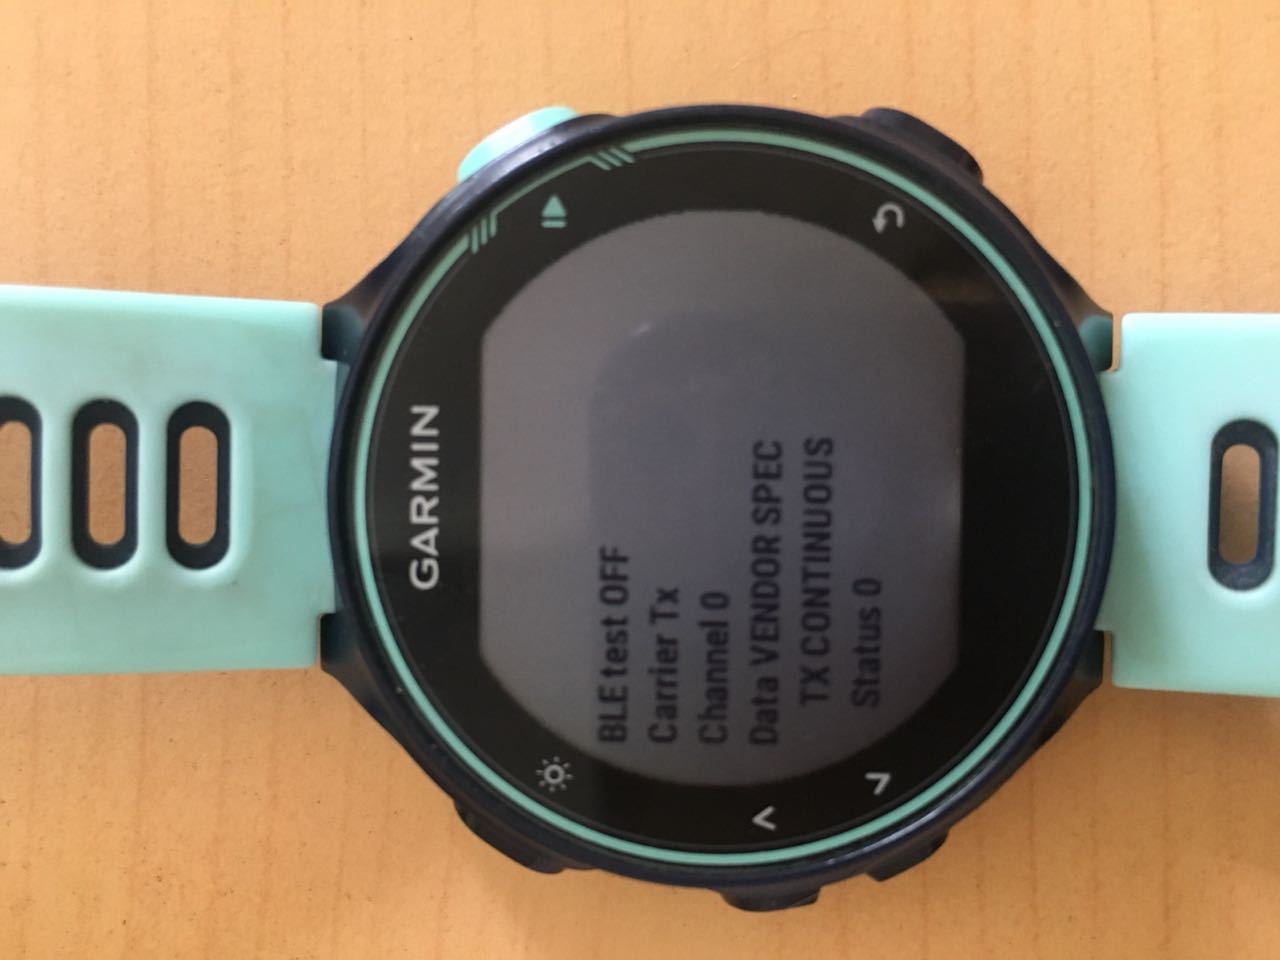 Garmin 735XT watch died and won't start charging - Forerunner 735XT Running/Multisport - Forums